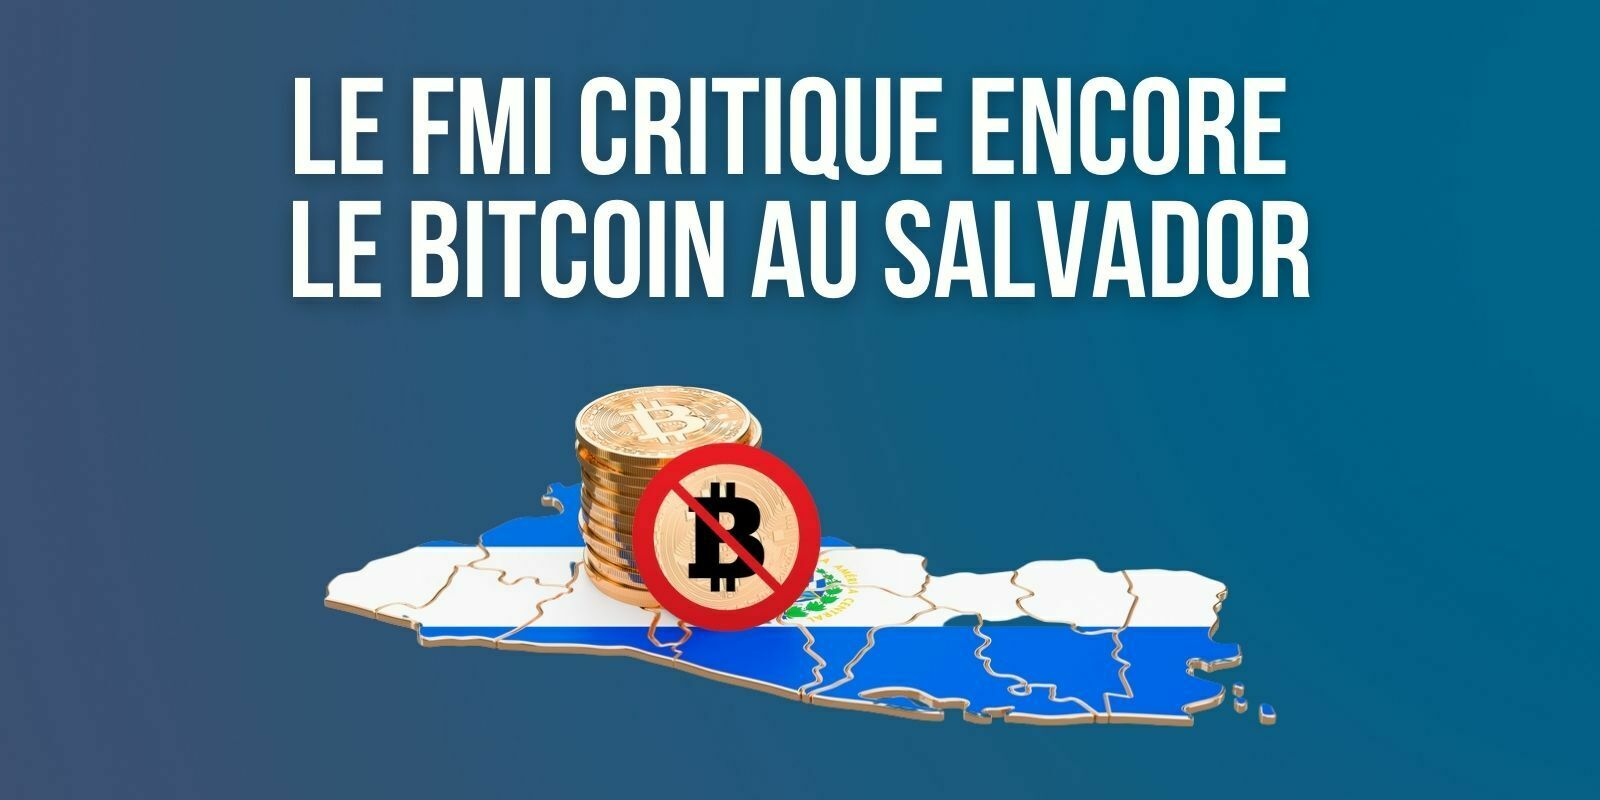 Le FMI estime que le Salvador ne devrait pas utiliser le Bitcoin (BTC) comme monnaie